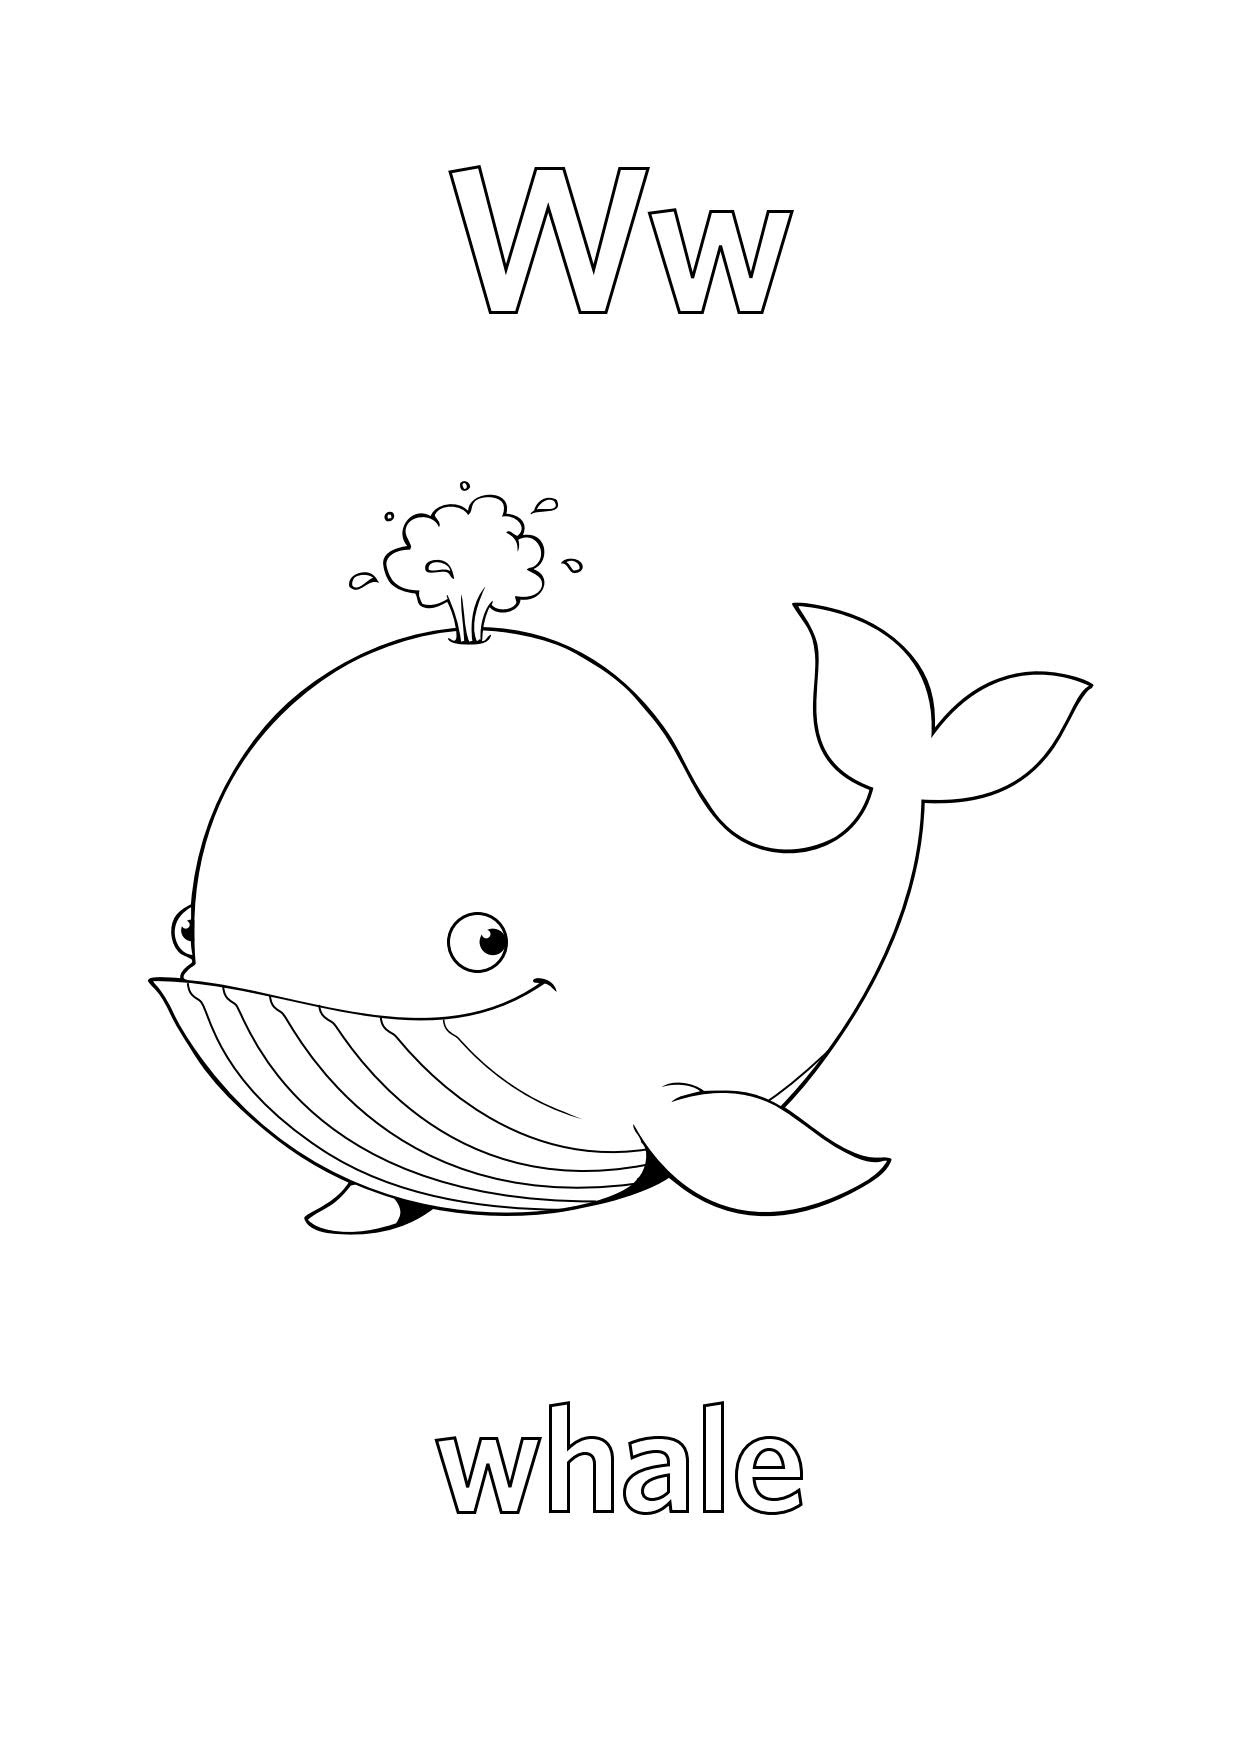 Tranh tô màu chữ cái W con cá  voi